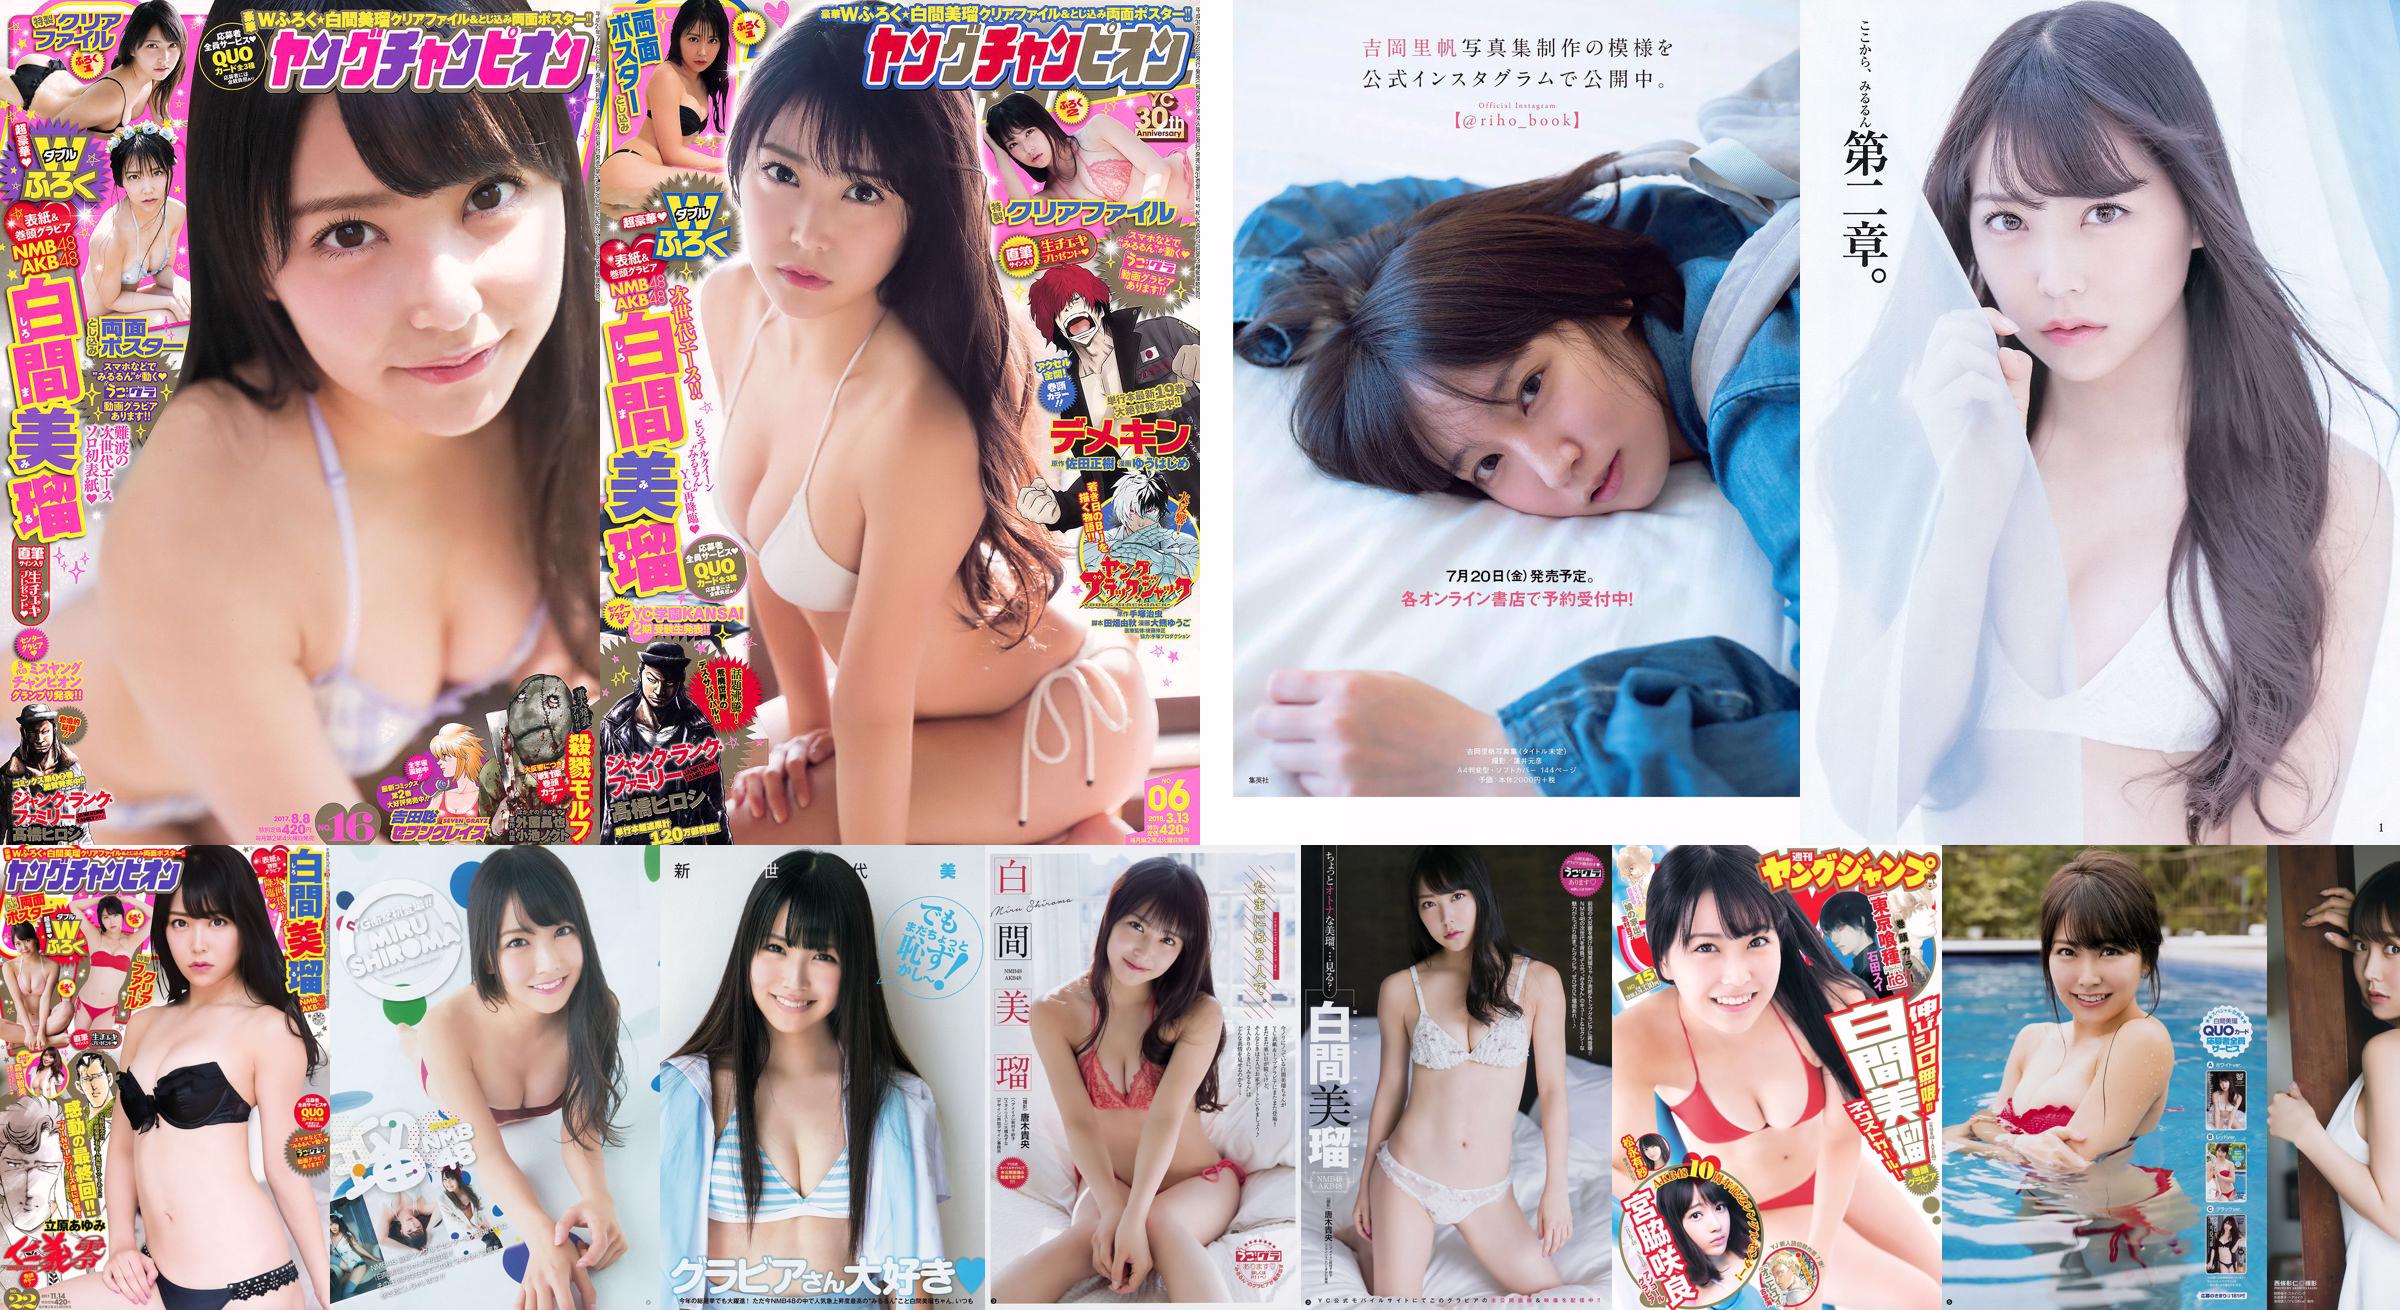 Miru Shiroma Miyawaki Sakura Arisa Matsunaga [Weekly Young Jump] 2016 No.15 Photograph No.3bb634 หน้า 1